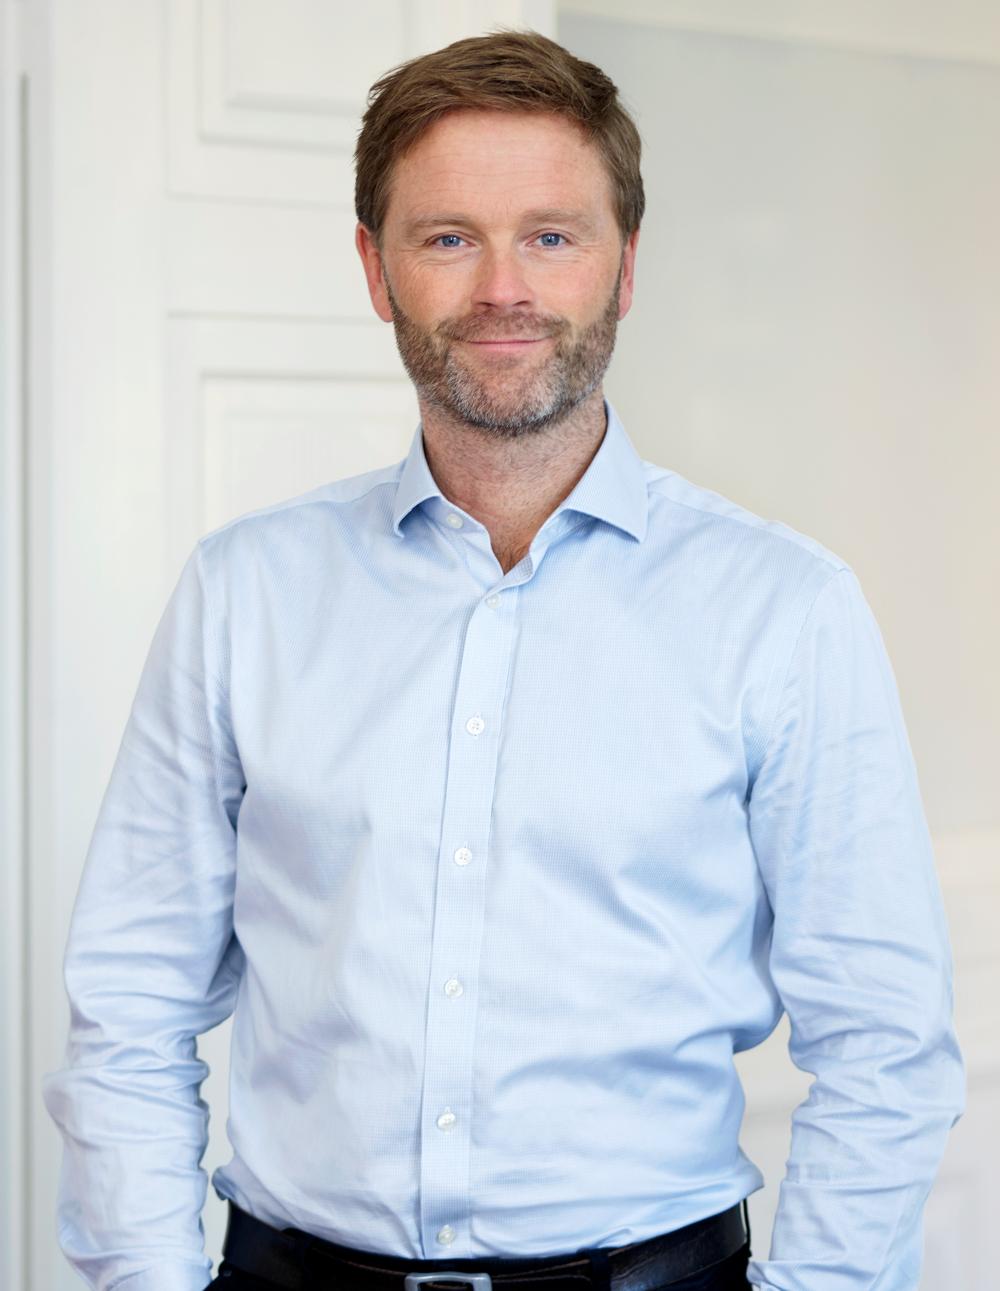 Driftsdirektør Morten Søegaard-Larsen fra Byggeskadefonden. Pressefoto modtaget 05.05.22